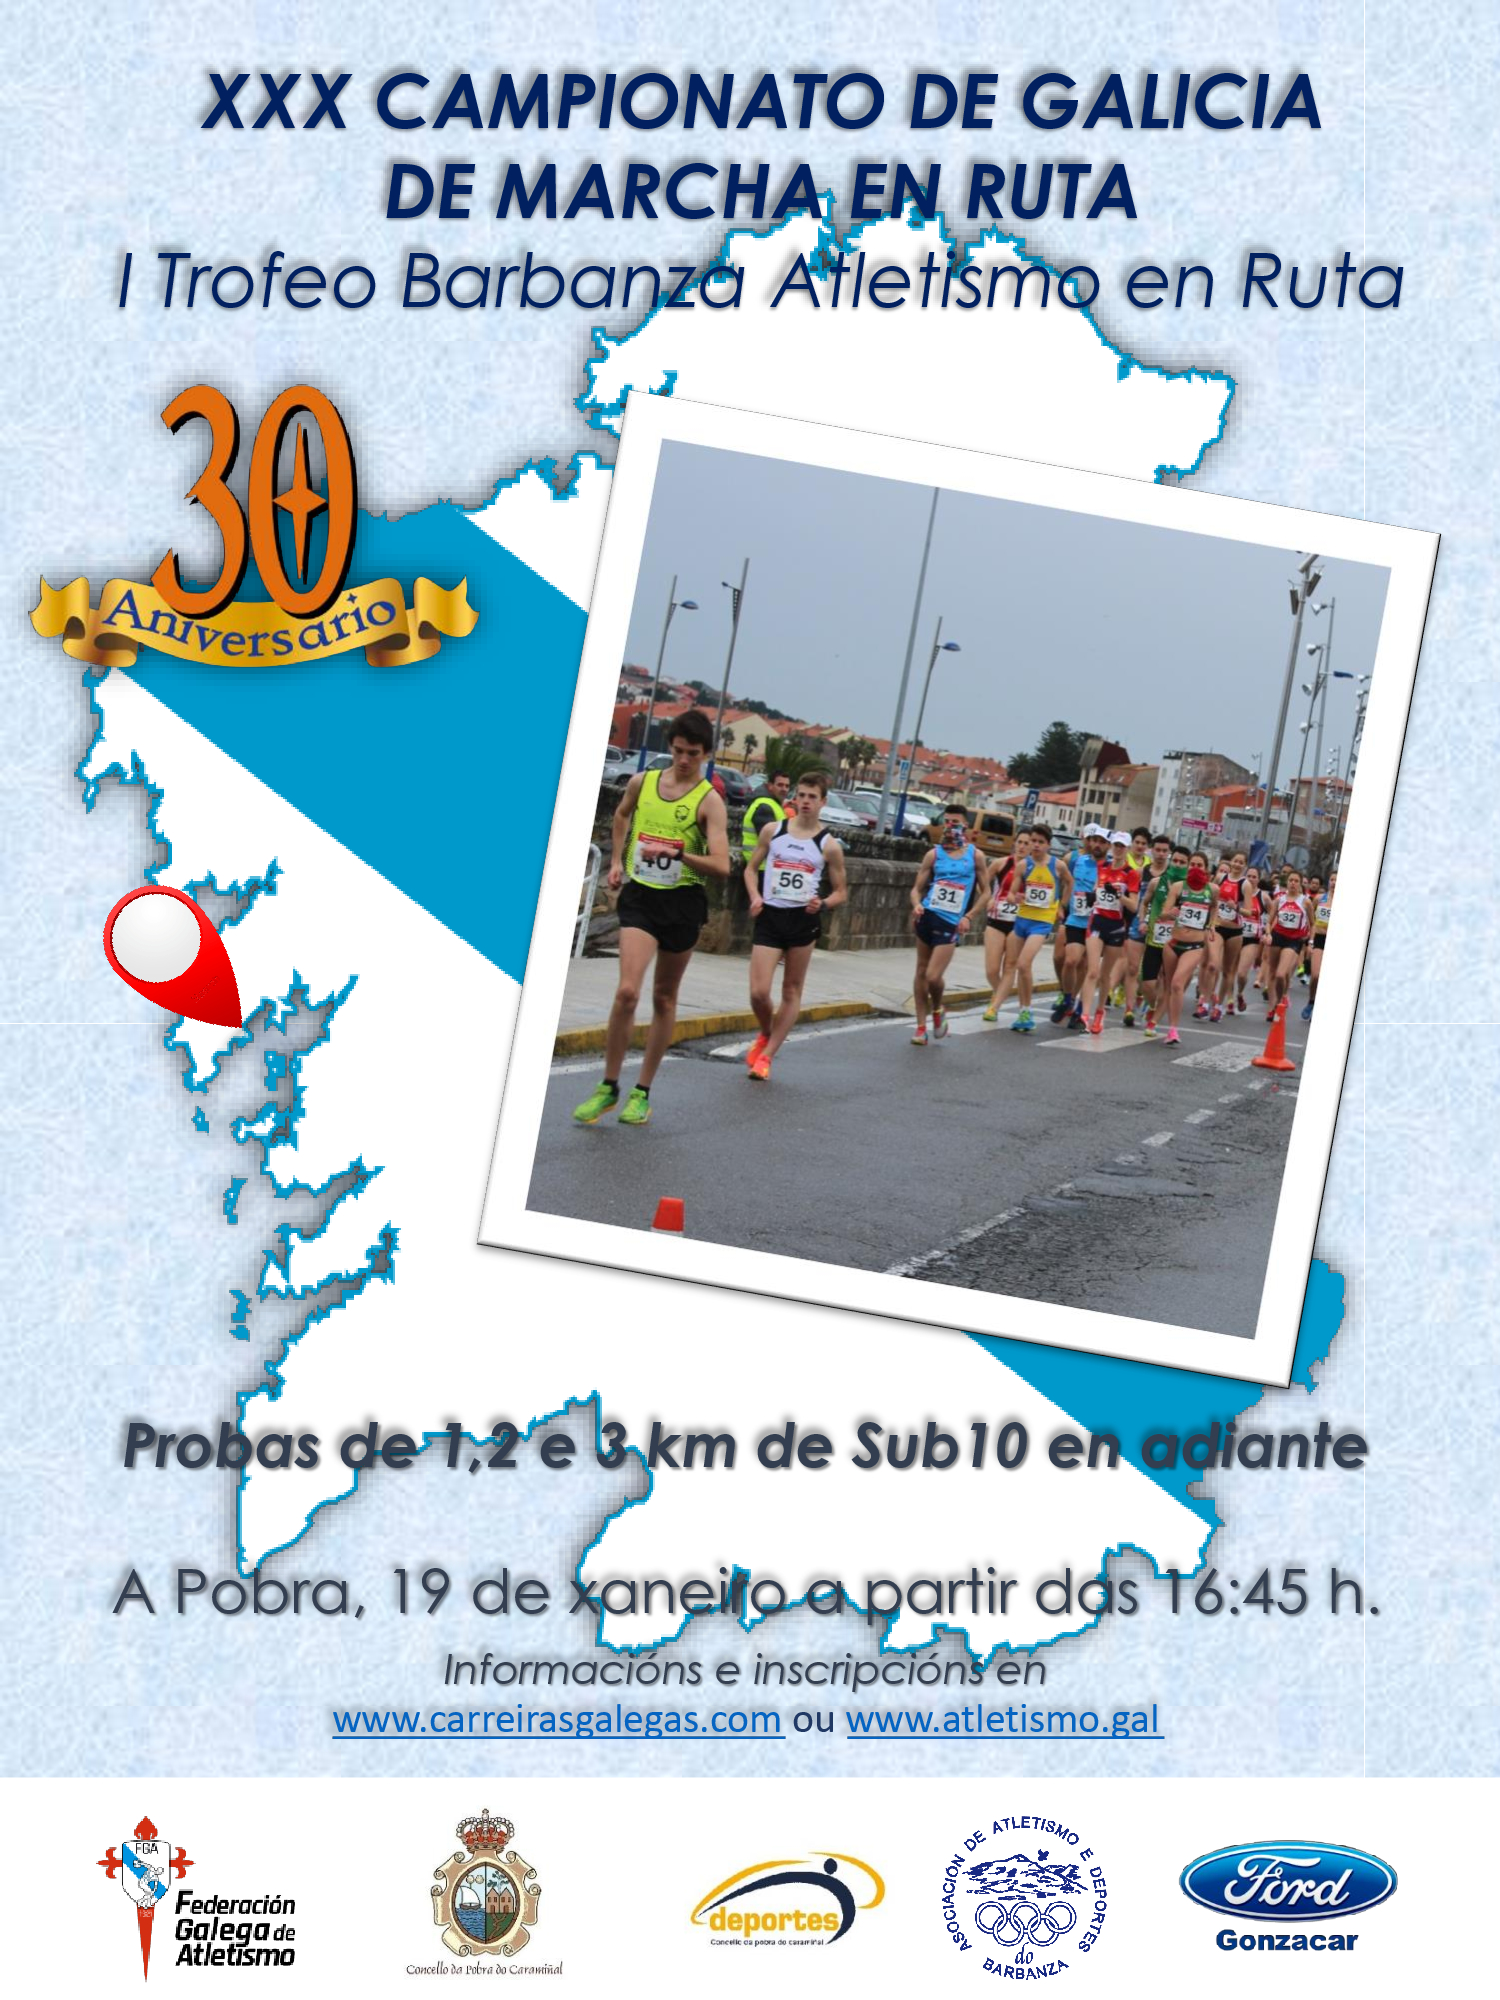 XXX Campionato de Galicia de Marcha en Ruta